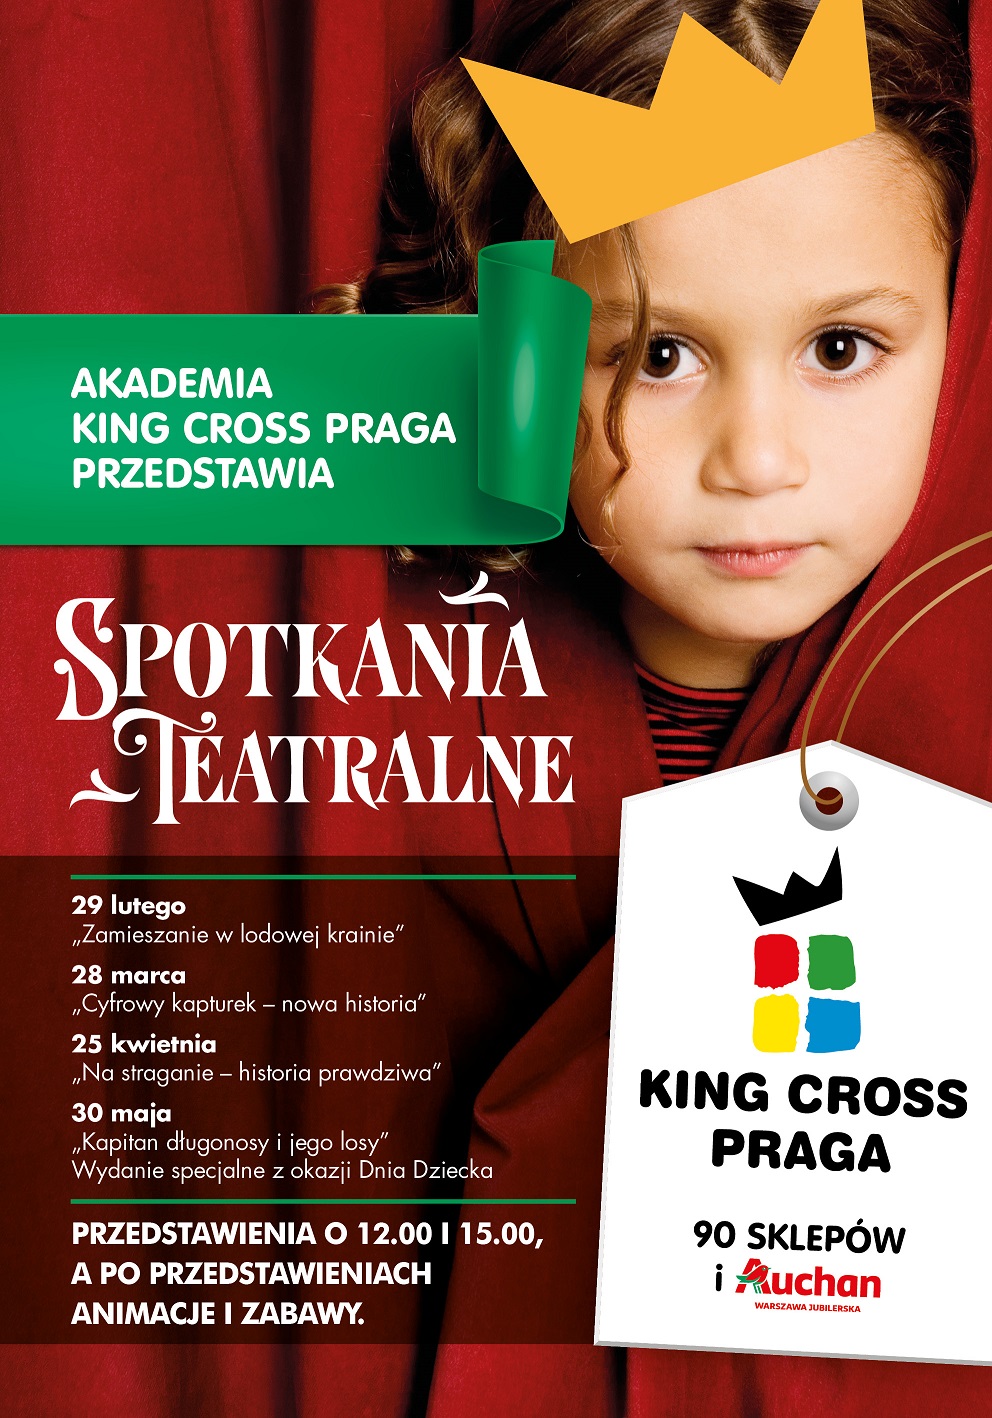 Akademia teatralna inspiruje najmłodszych w King Cross Praga!